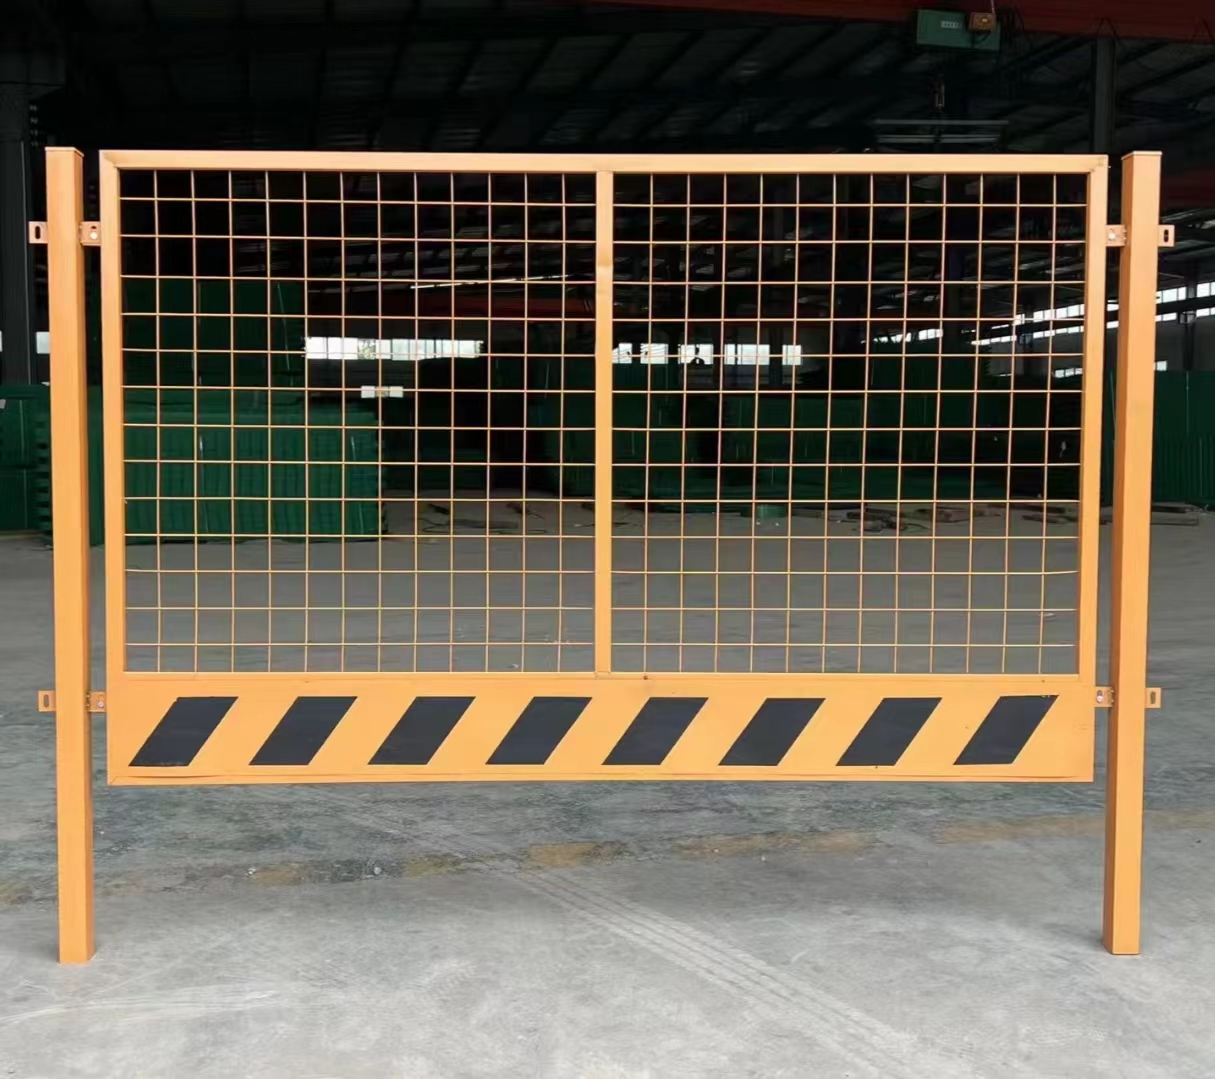 耀江市政工地施工深坑临时安全隔离围栏护栏网2米